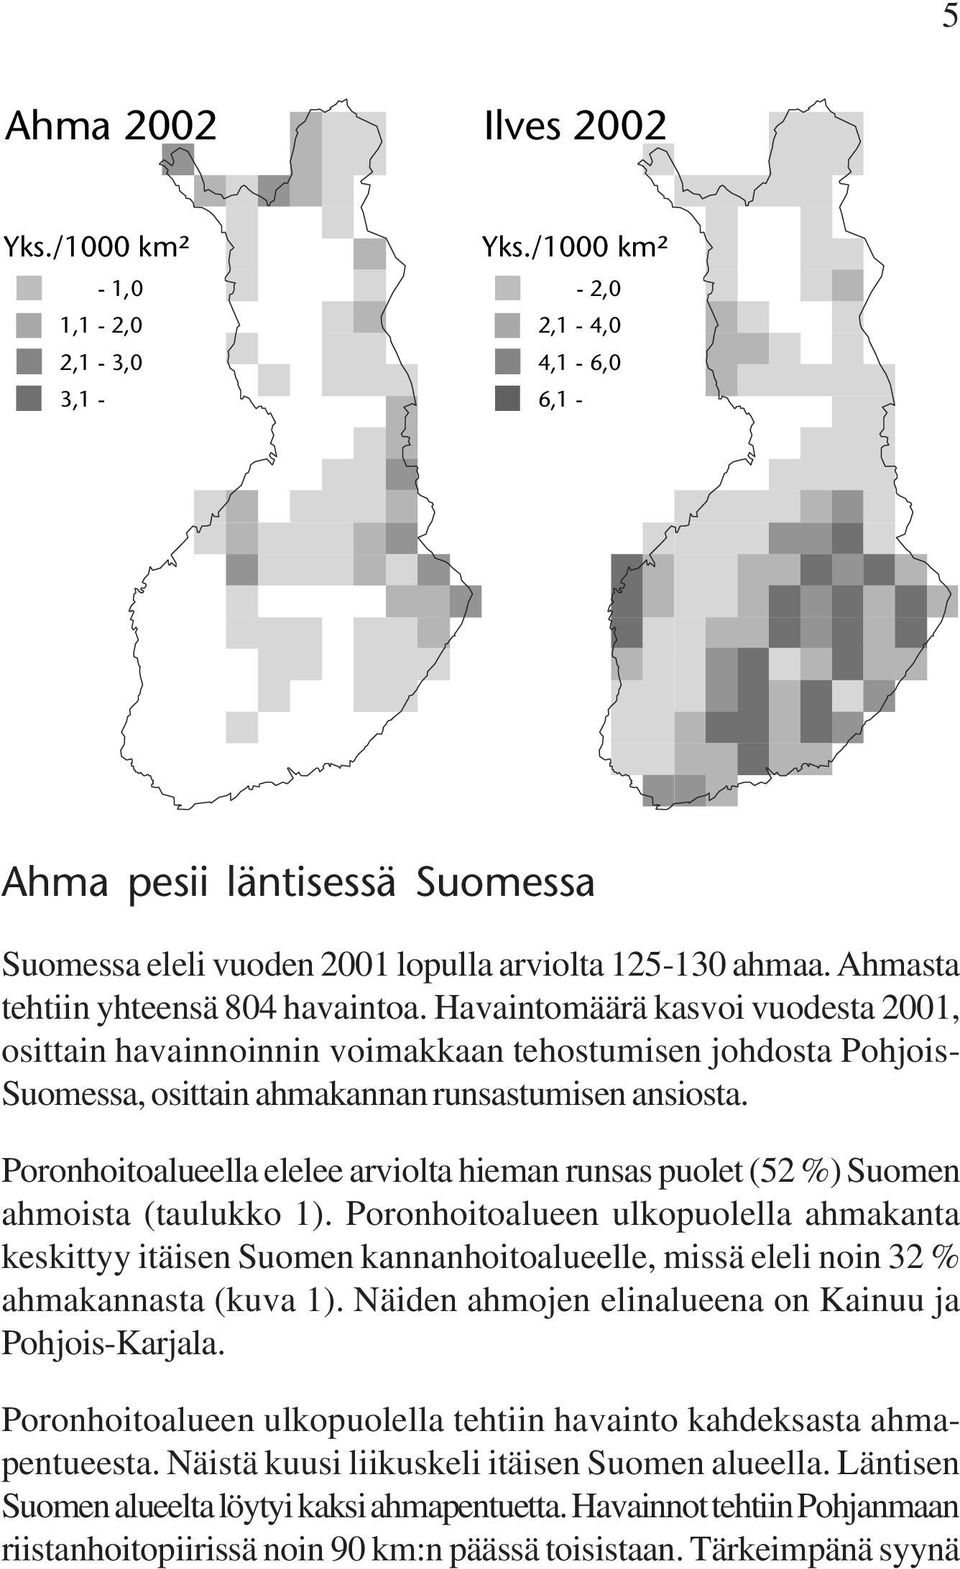 Poronhoitoalueella elelee arviolta hieman runsas puolet (52 %) Suomen ahmoista (taulukko 1).